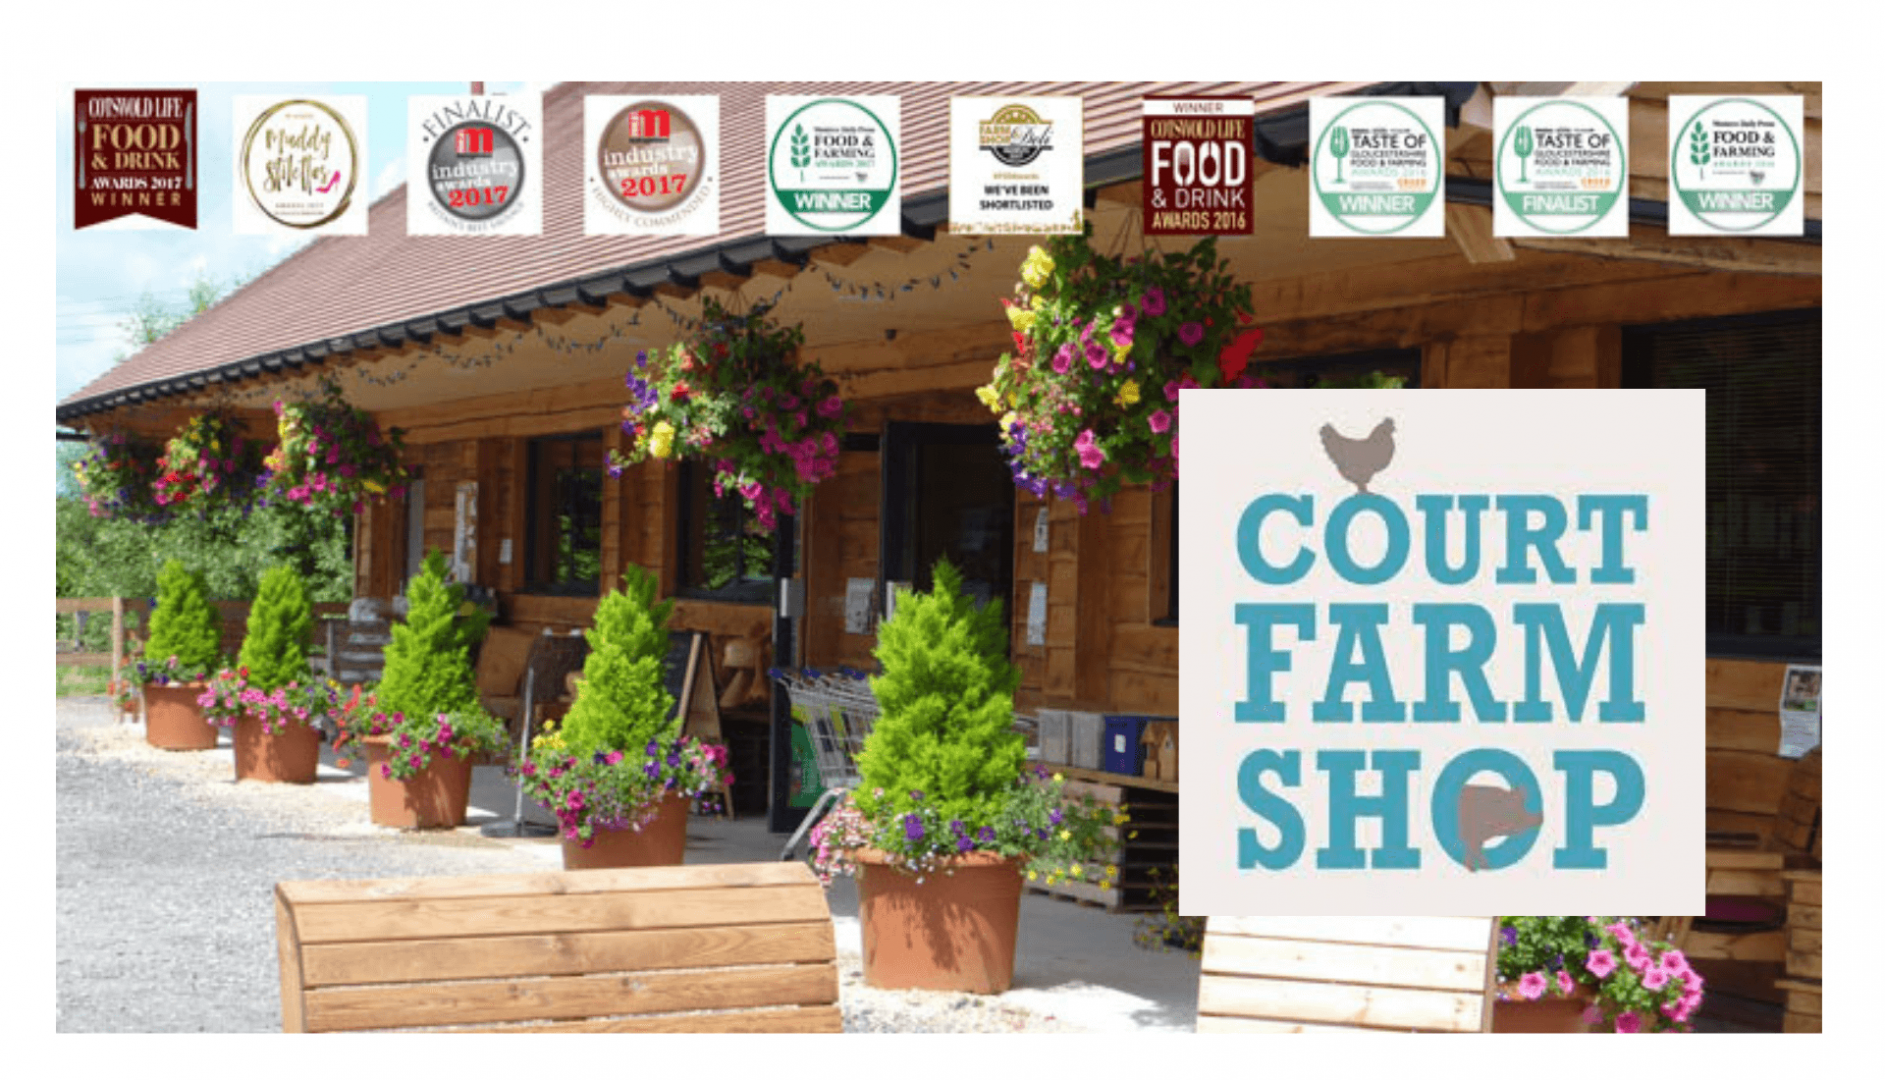 Court Farm Shop in Cheltenham